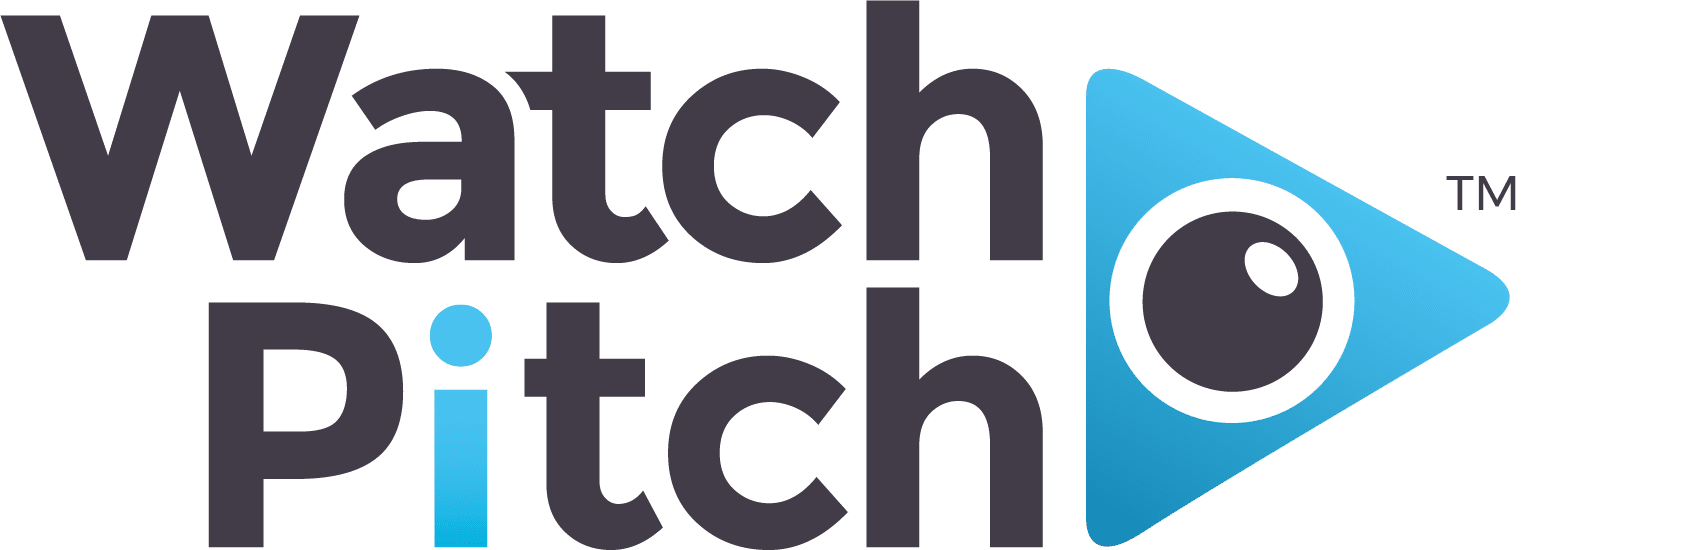 Watch Pitch podcast logo